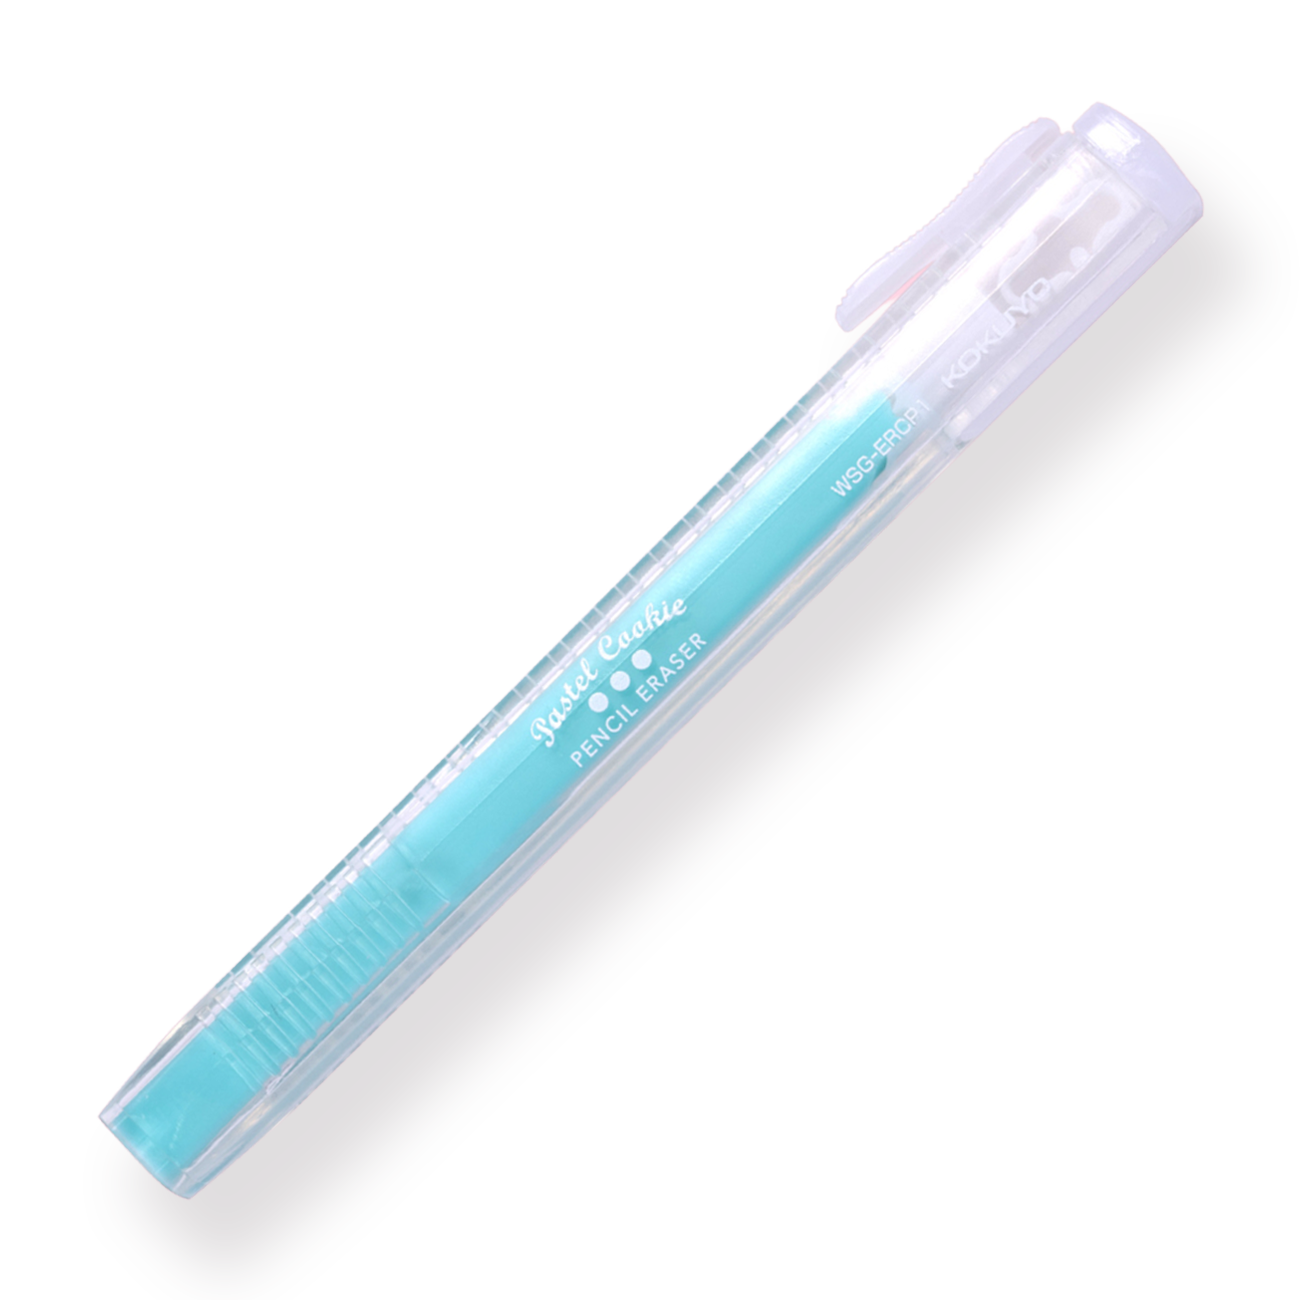 Kokuyo Pencil Eraser - Cream Soda